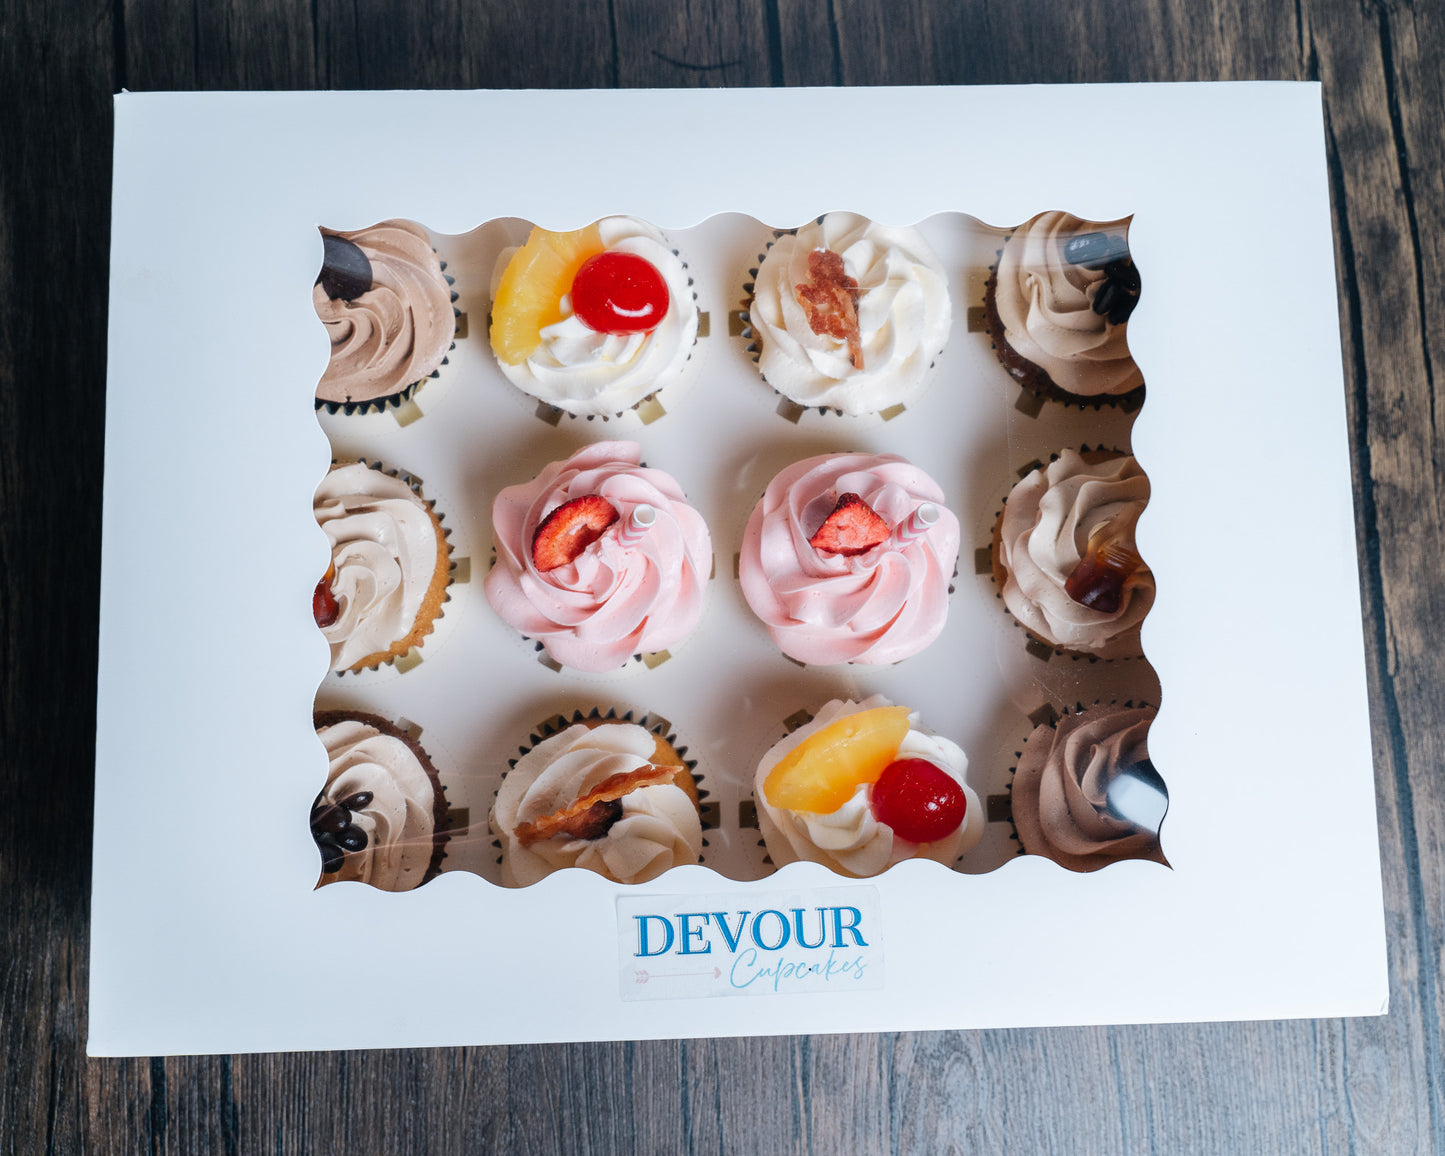 Devour cupcakes (dozen) Home-Run